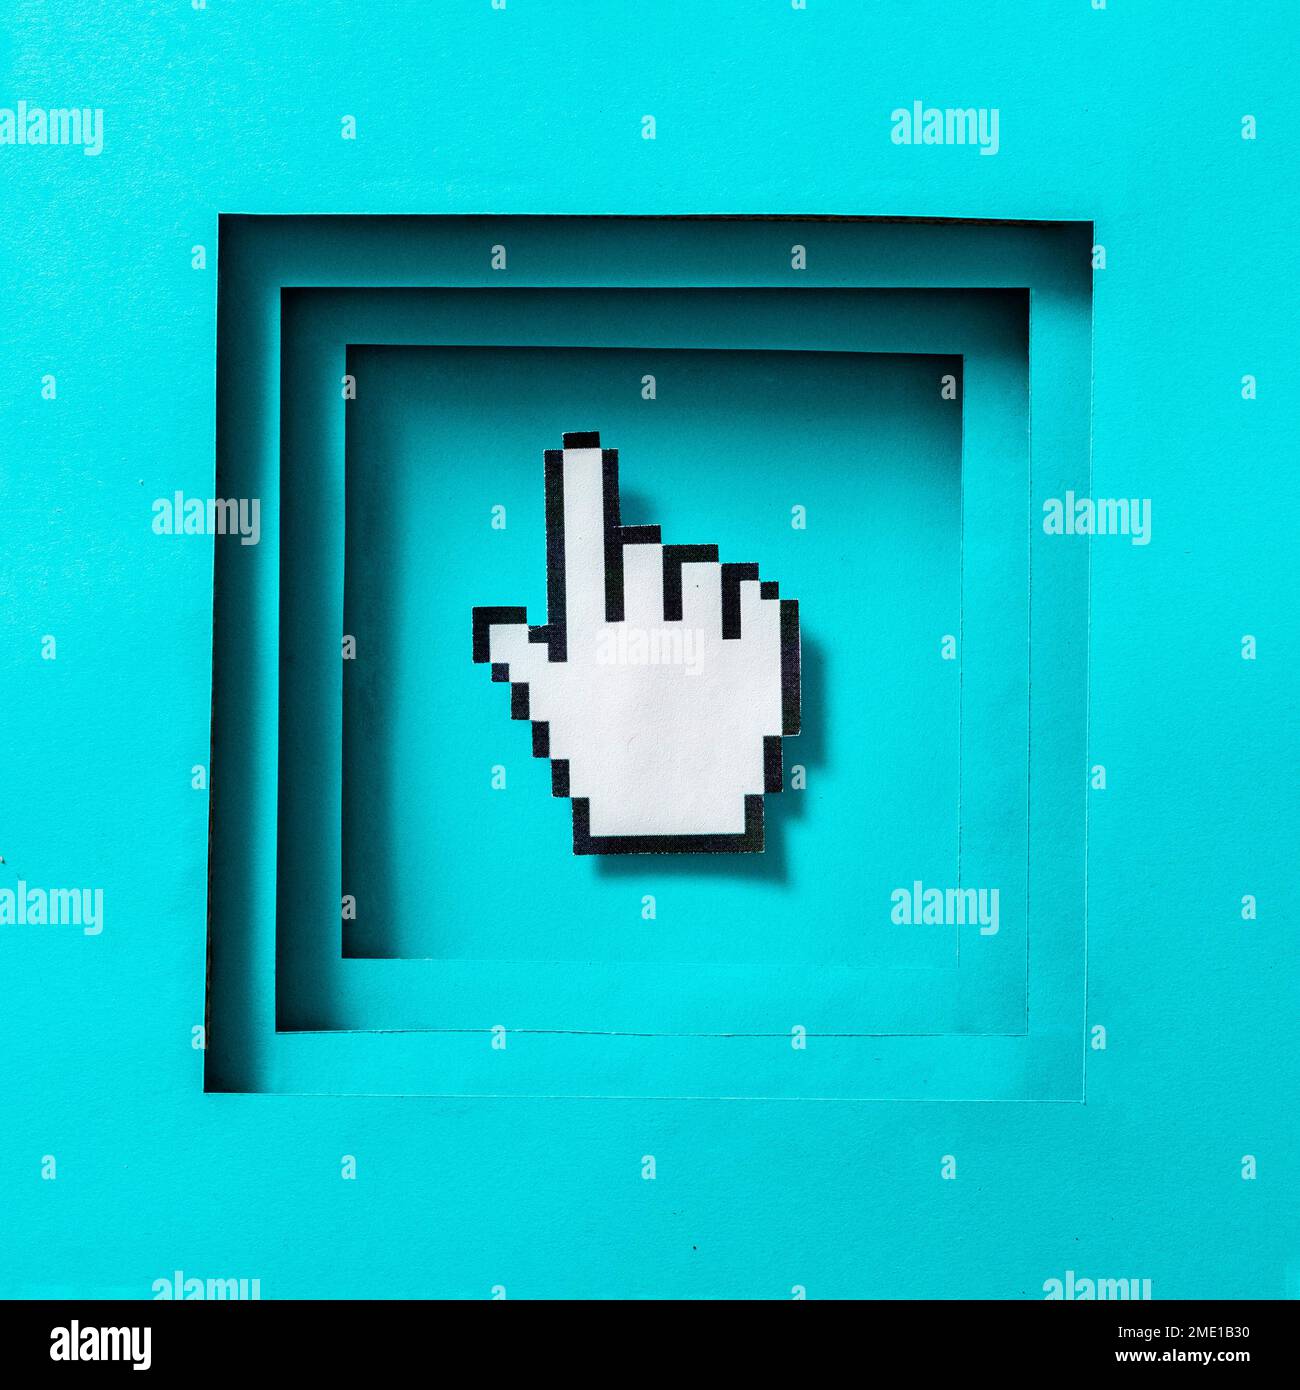 Curseur pixel du doigt de la souris dans le cadre. Symbole conceptuel minimal de la technologie informatique et de la recherche. Photo de haute qualité Banque D'Images